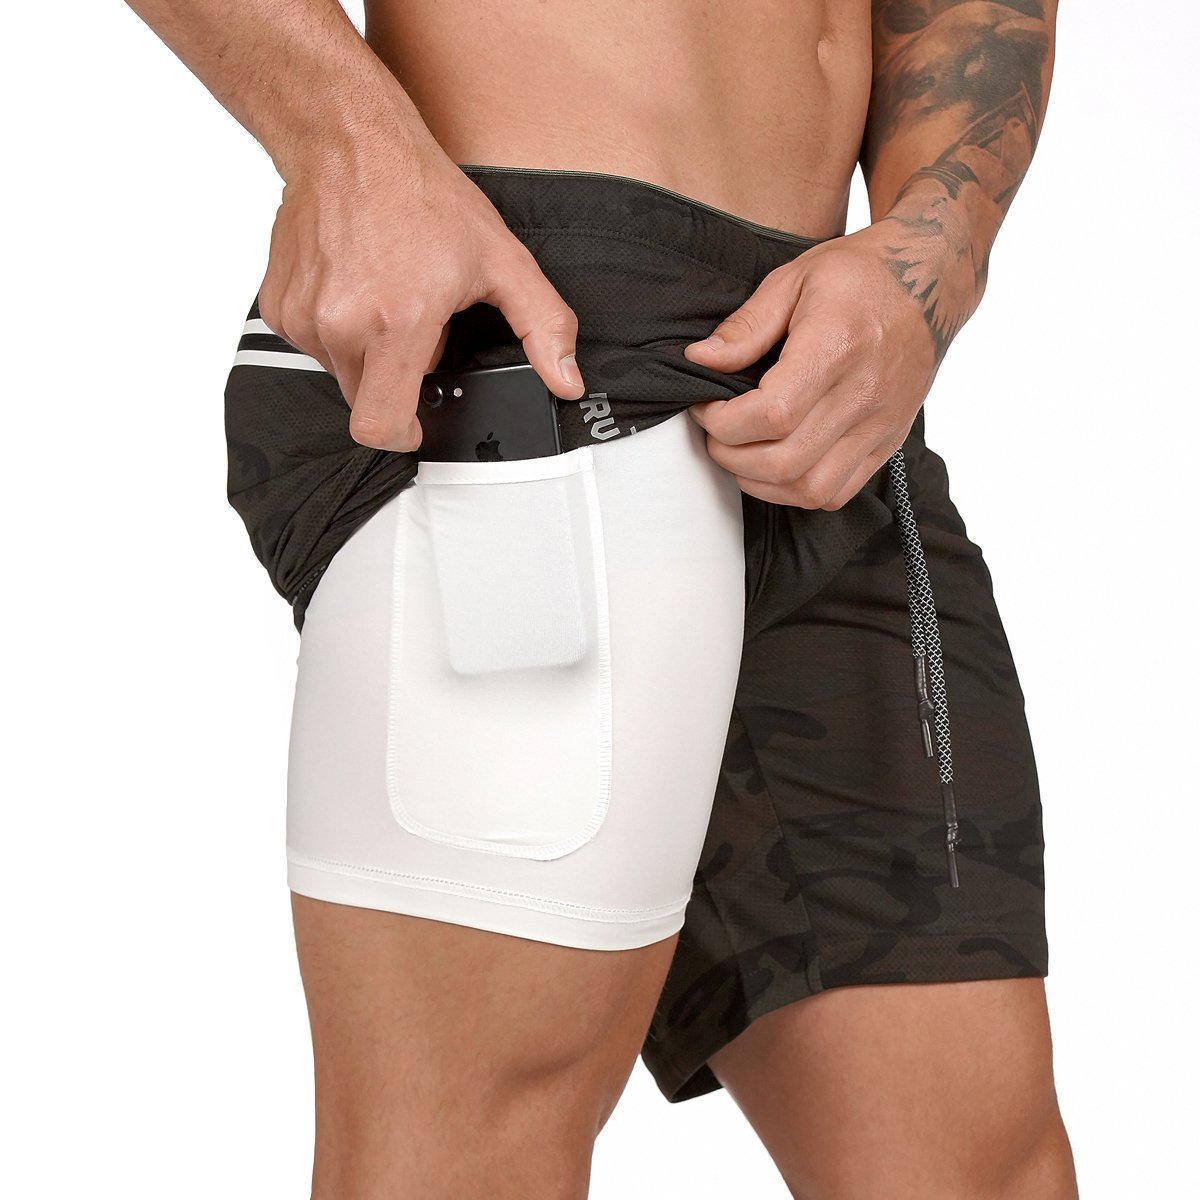 ASRV 2-in-1 Secure Pocket Shorts